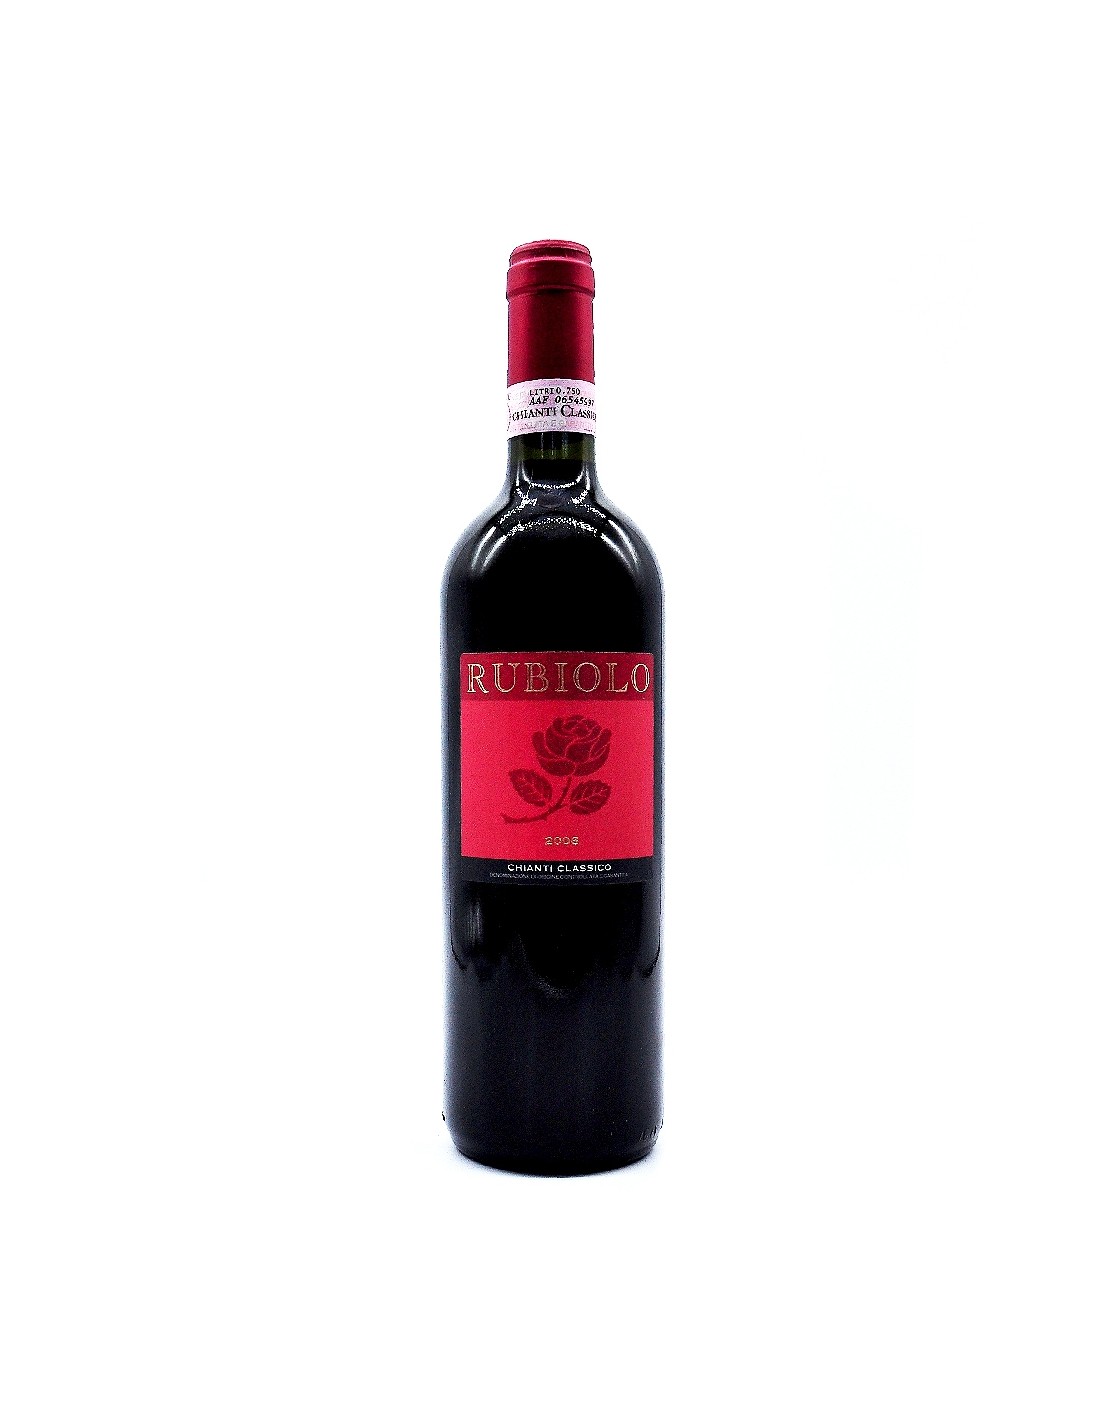 Vin rosu sec, Chianti Classico Rubiolo, 13.5% alc., 0.75L, Italia